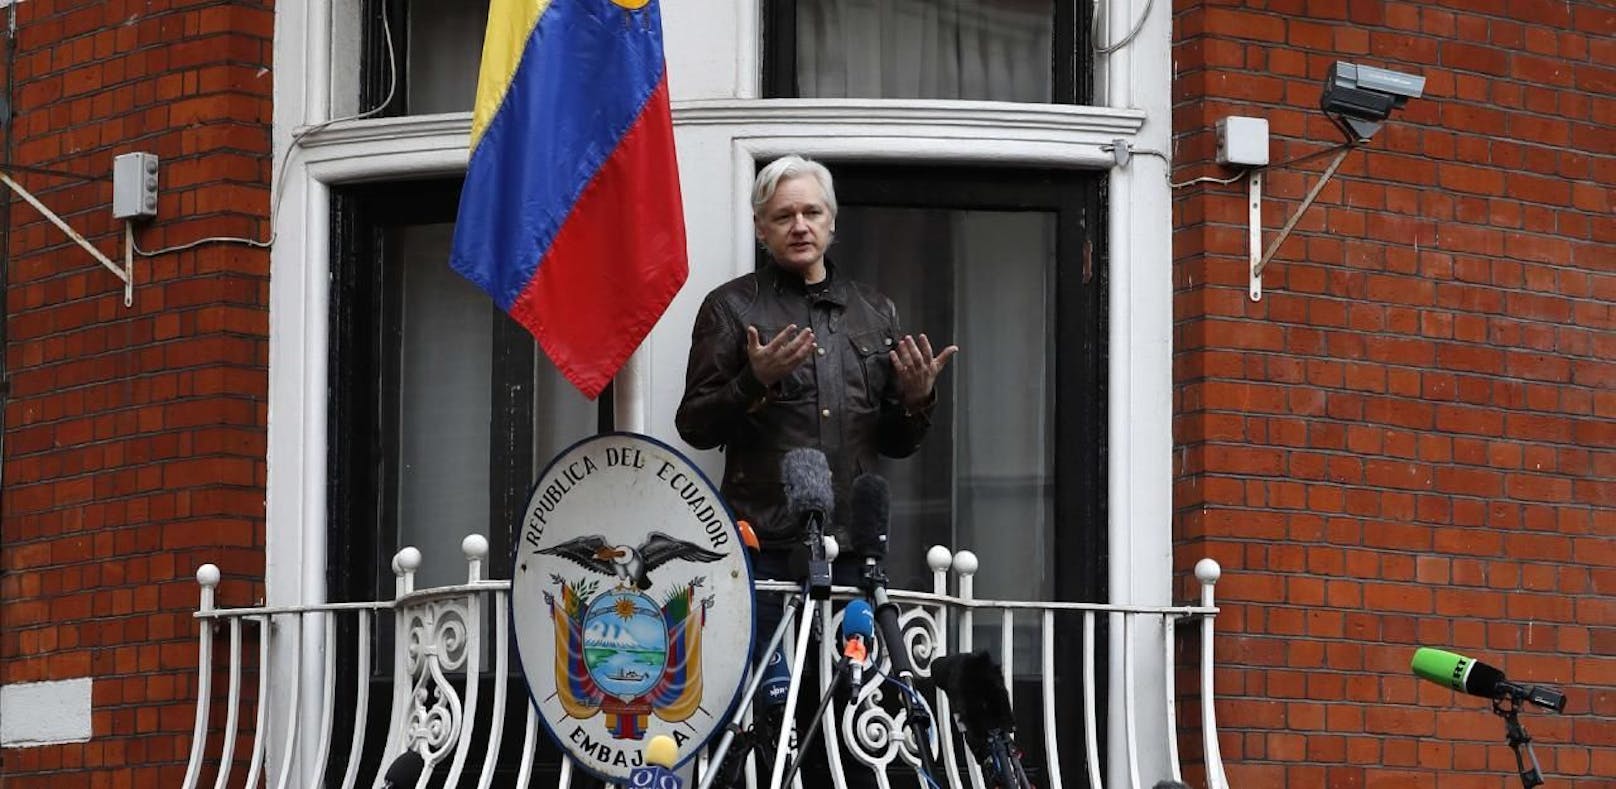 Wird Assange aus Botschaft geworfen?